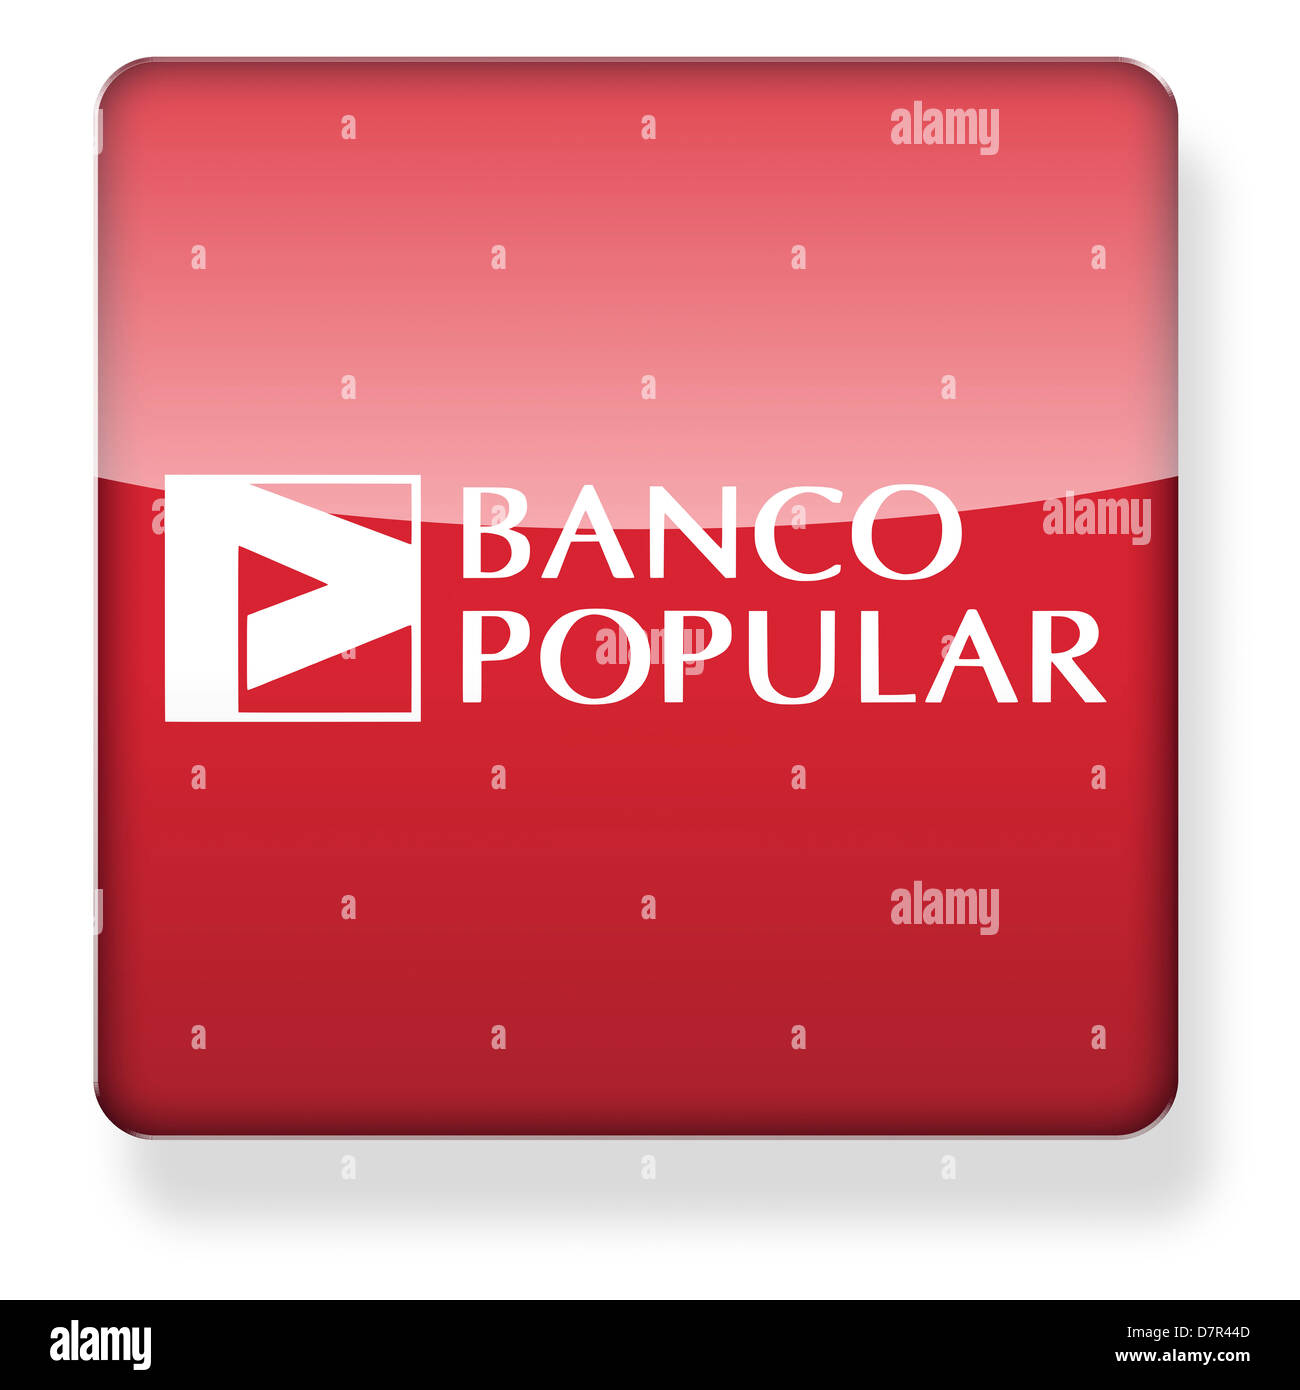 Banco Popular logotipo como el icono de una aplicación. Trazado de recorte incluido. Foto de stock